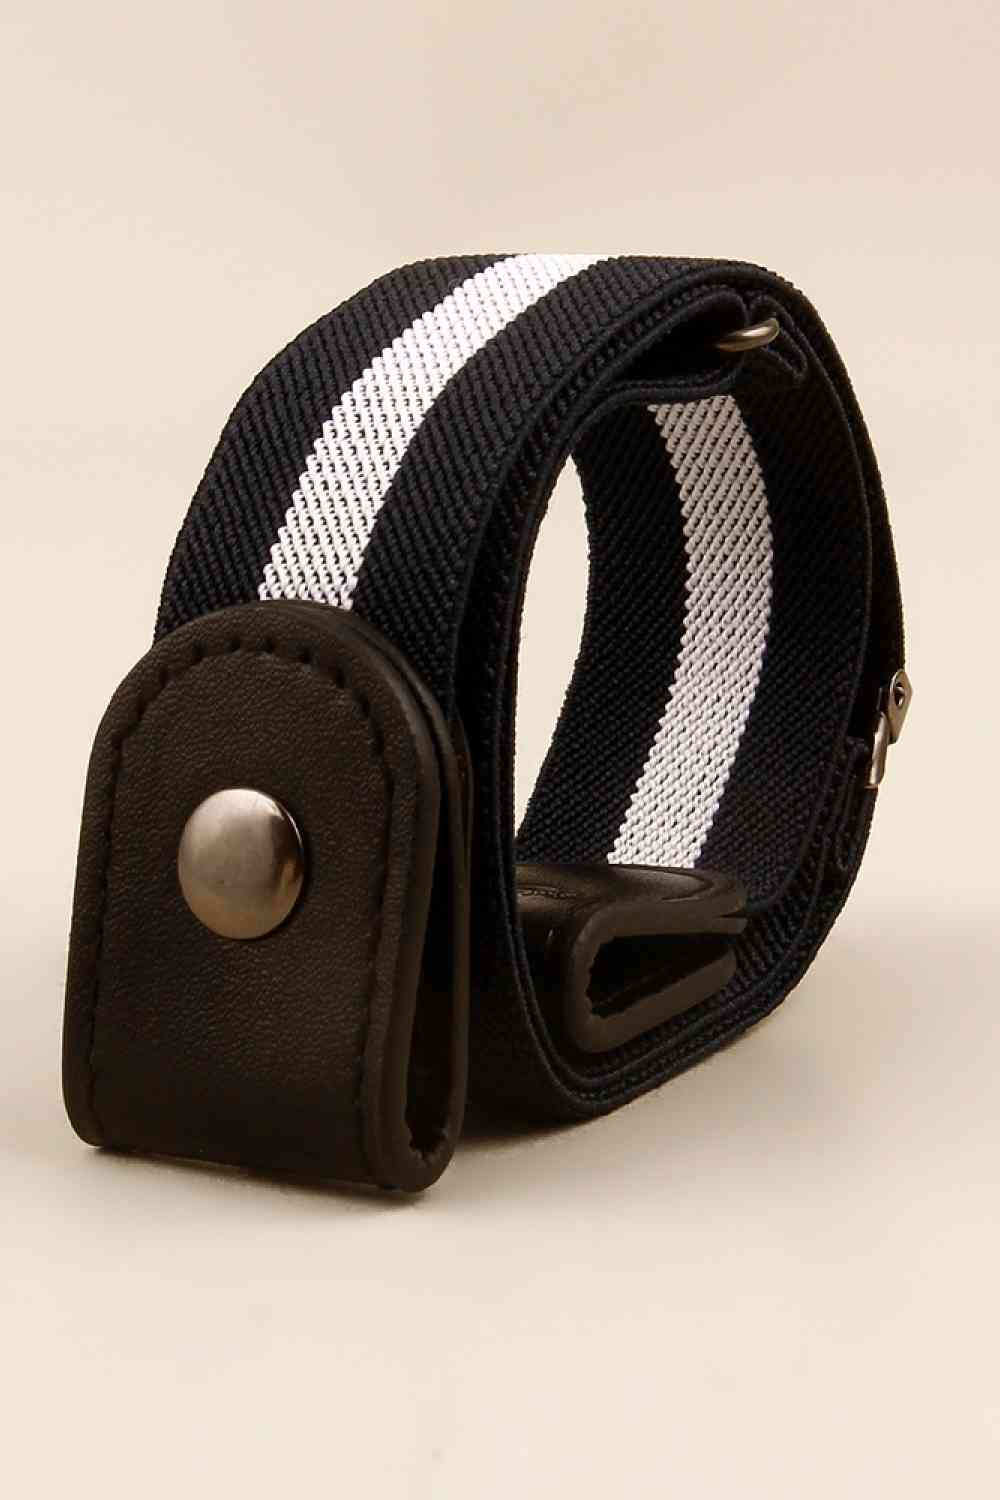 TEEK - Belt Loop Snap Belt BELT TEEK Trend Black/White  